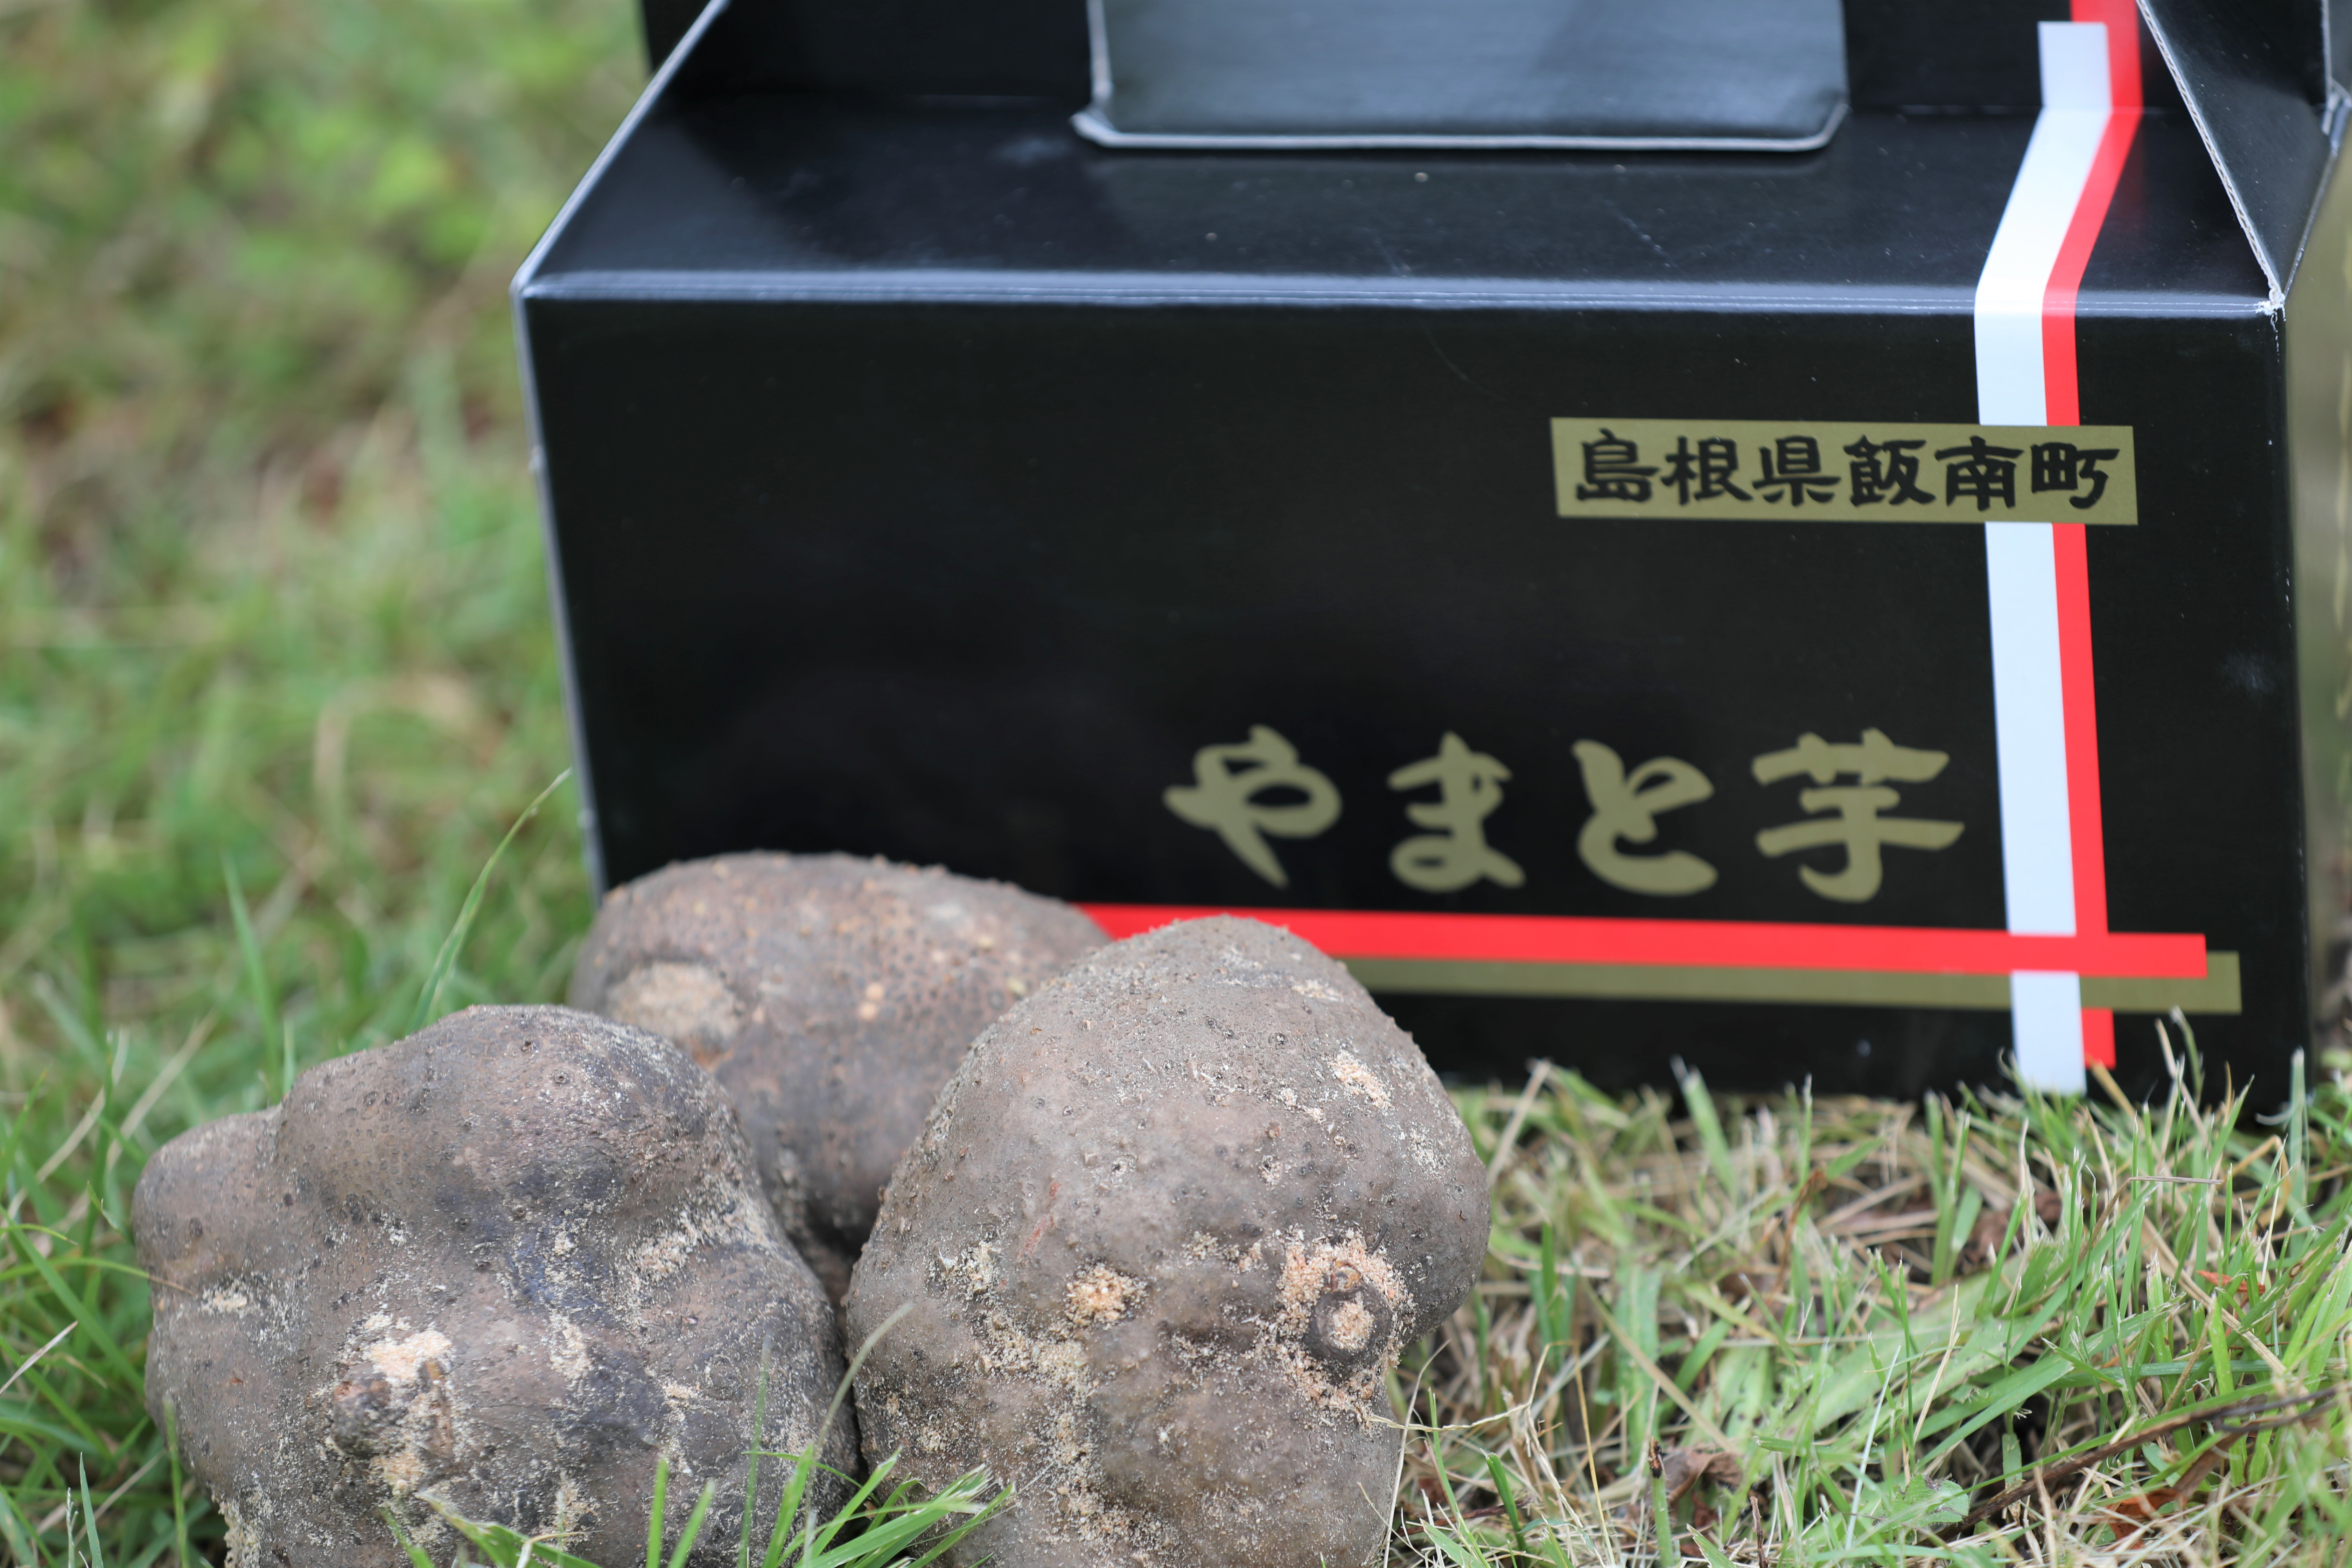 飯南町産ヤマトイモ(つくね芋)約500g×3個[とろろ 大和芋 ヘルシー 滋養強壮A-30]